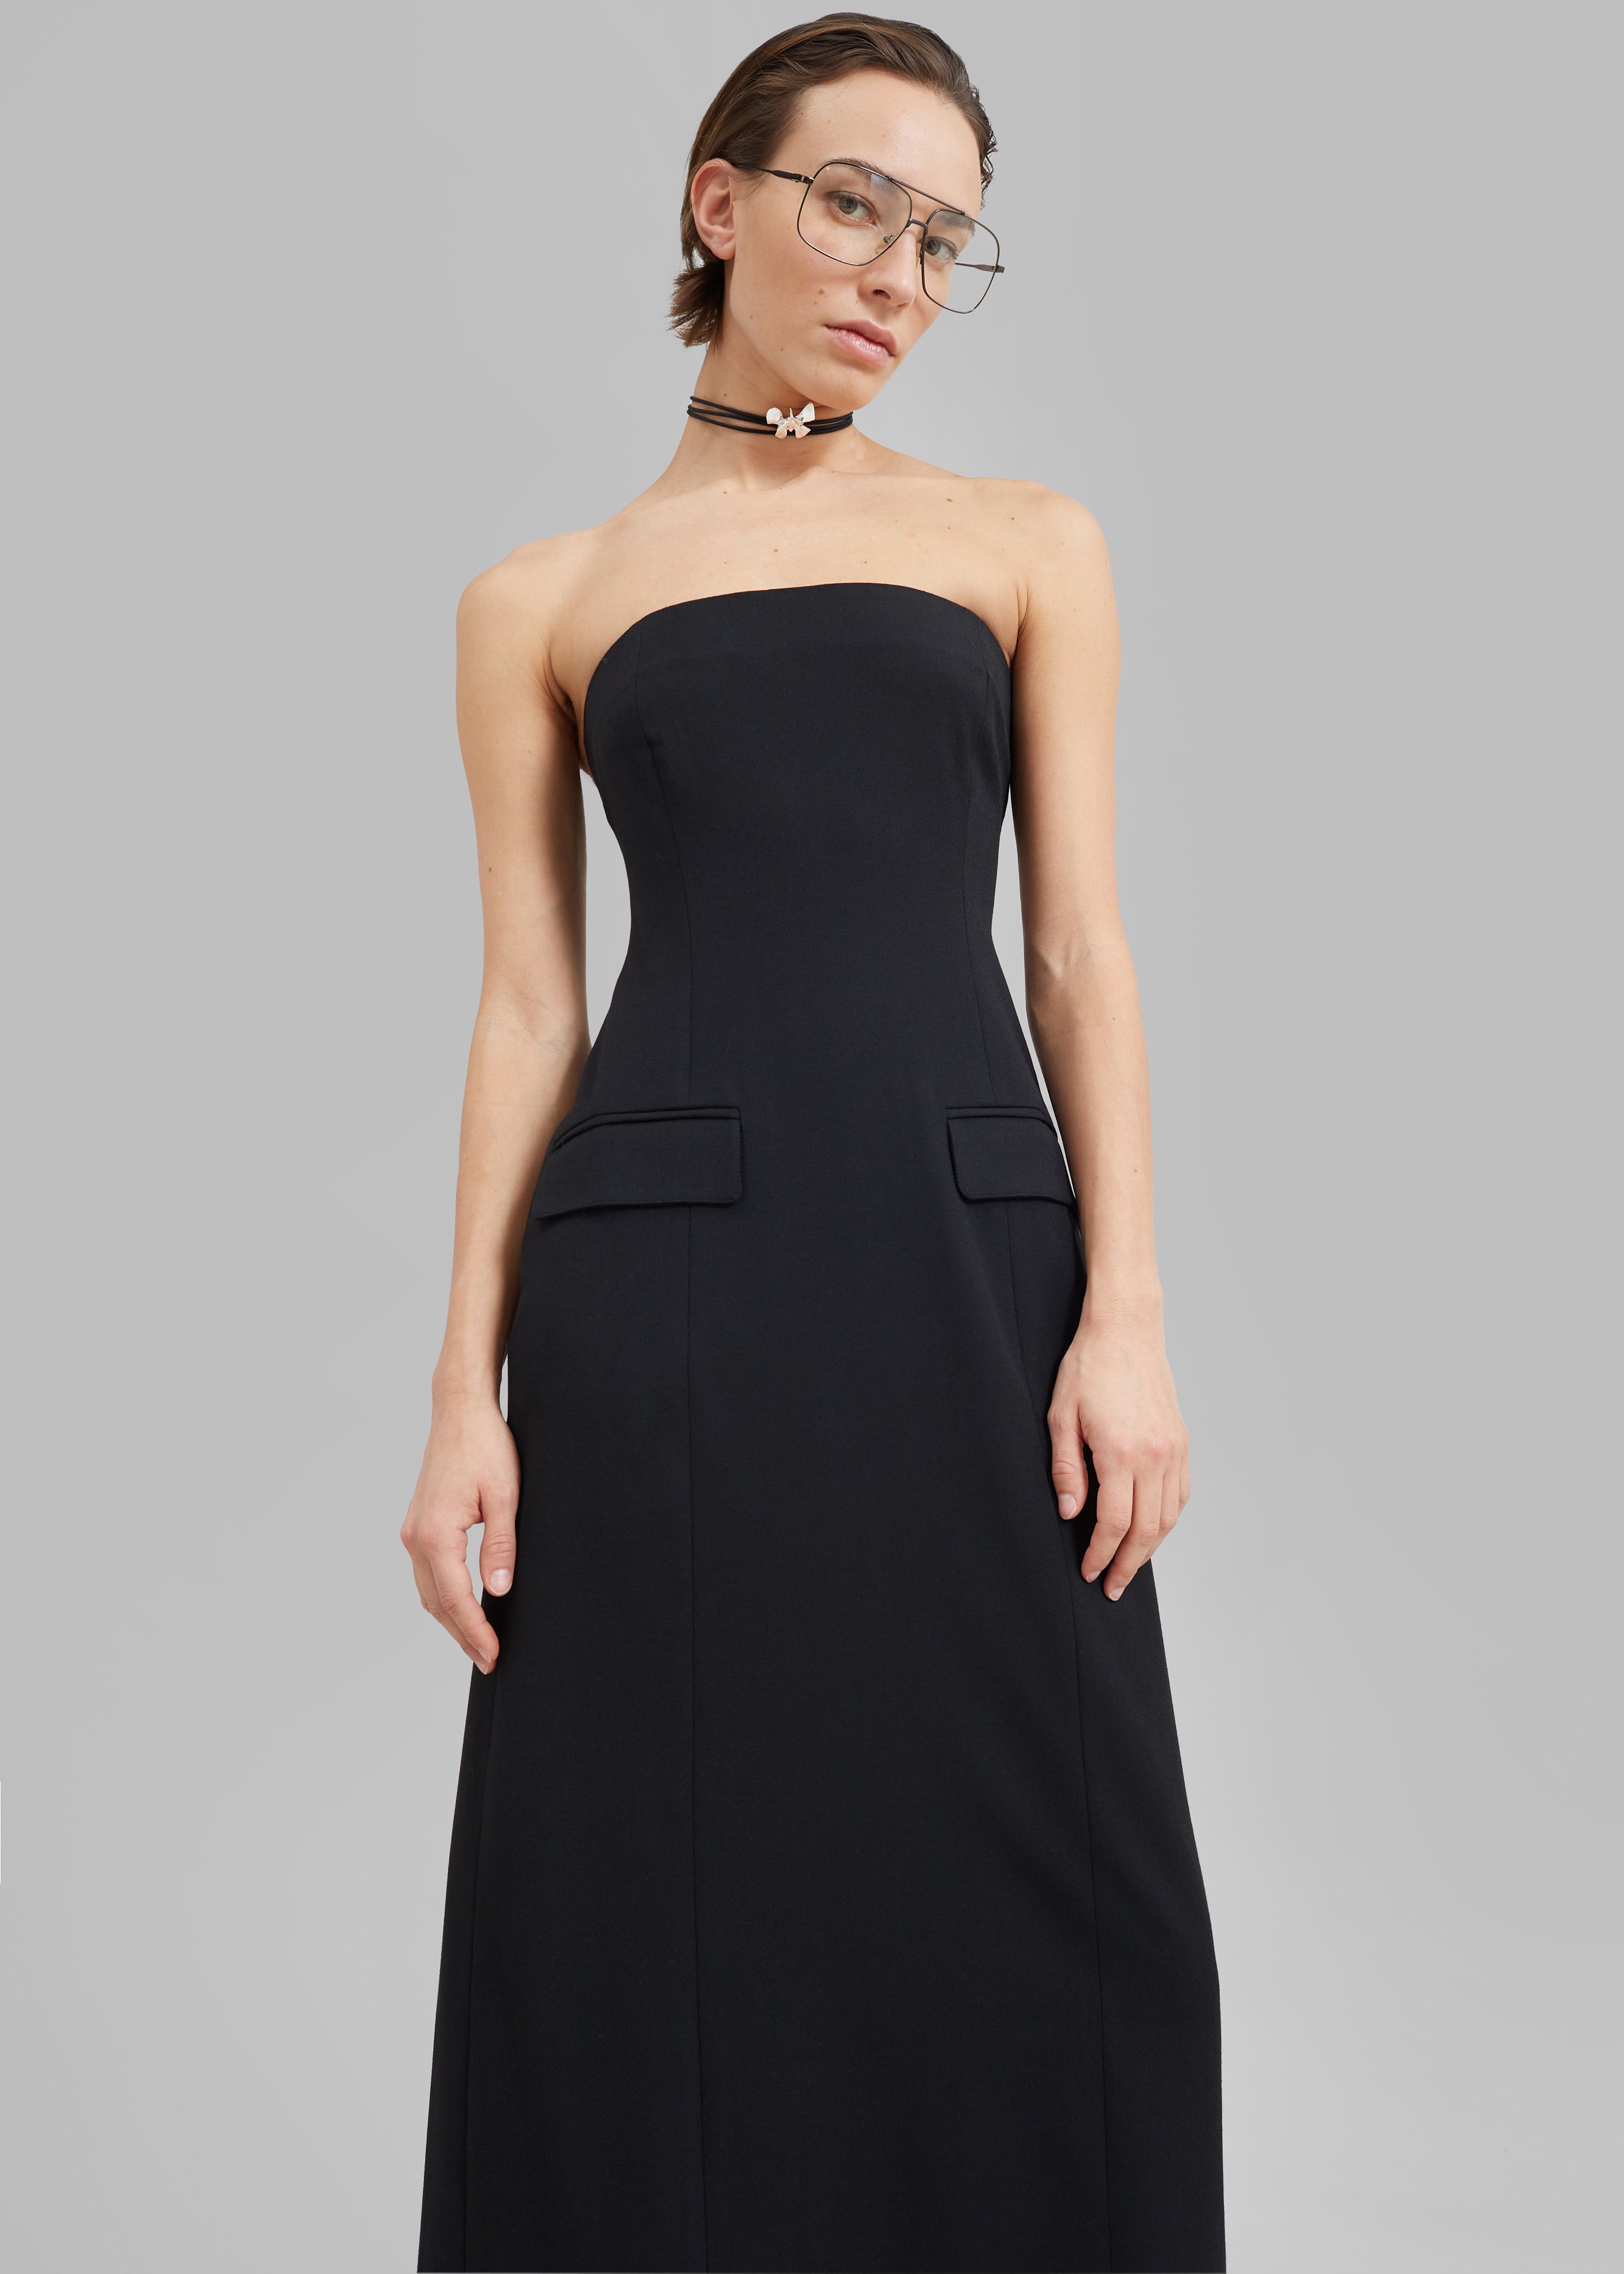 Beaufille Callie Dress - Black - 2